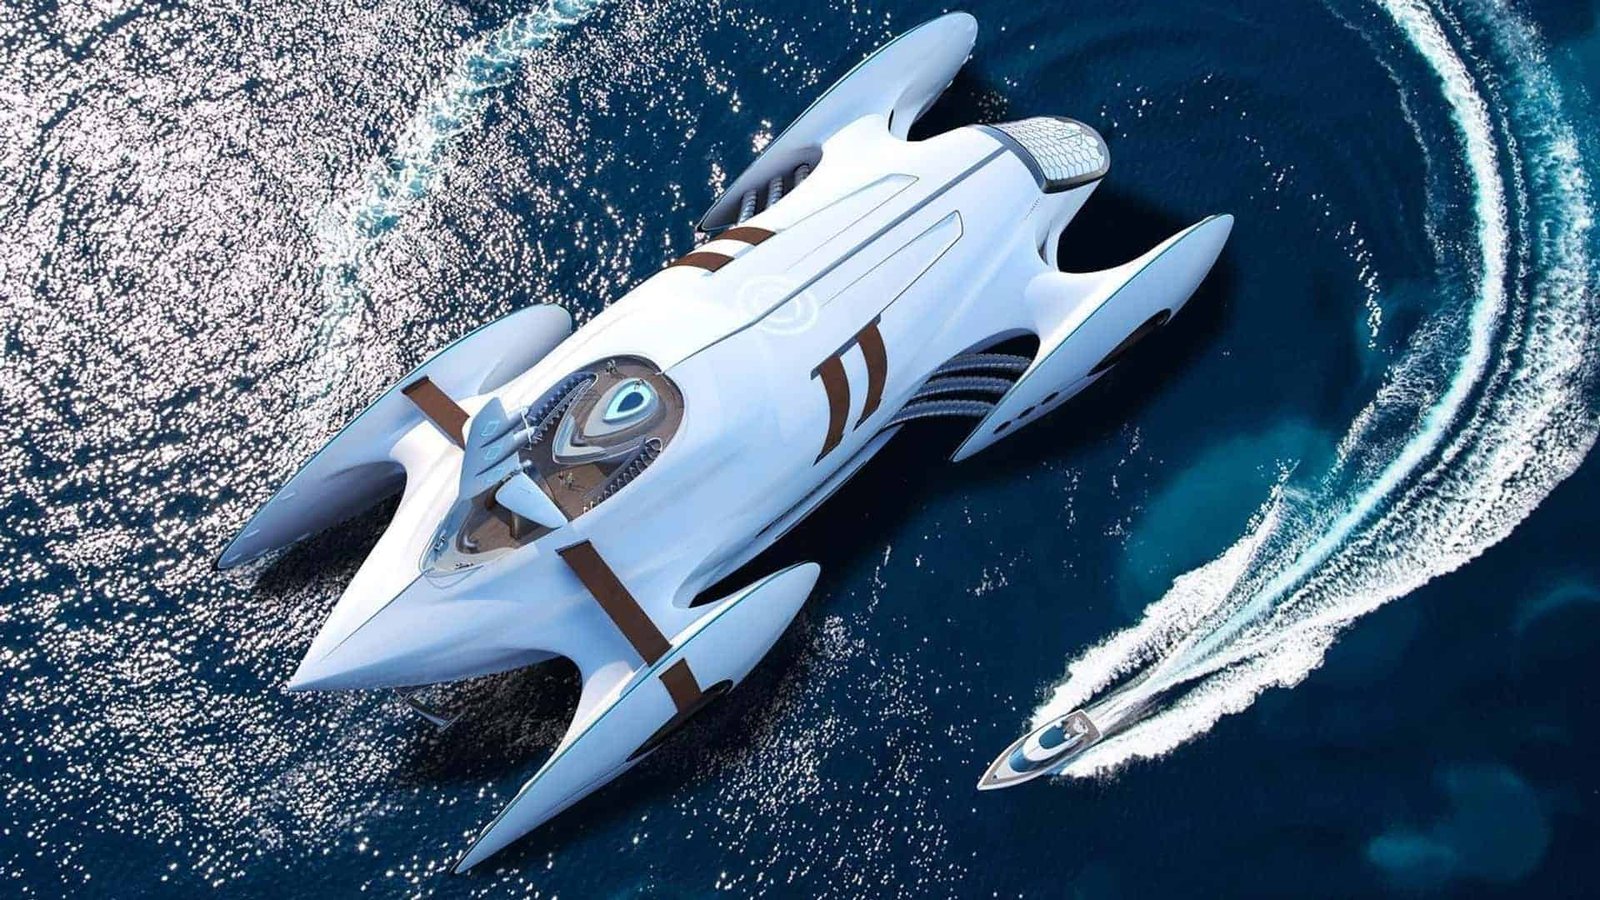 Futurista e tecnológico: esse catamarã parece ter vindo de 2050